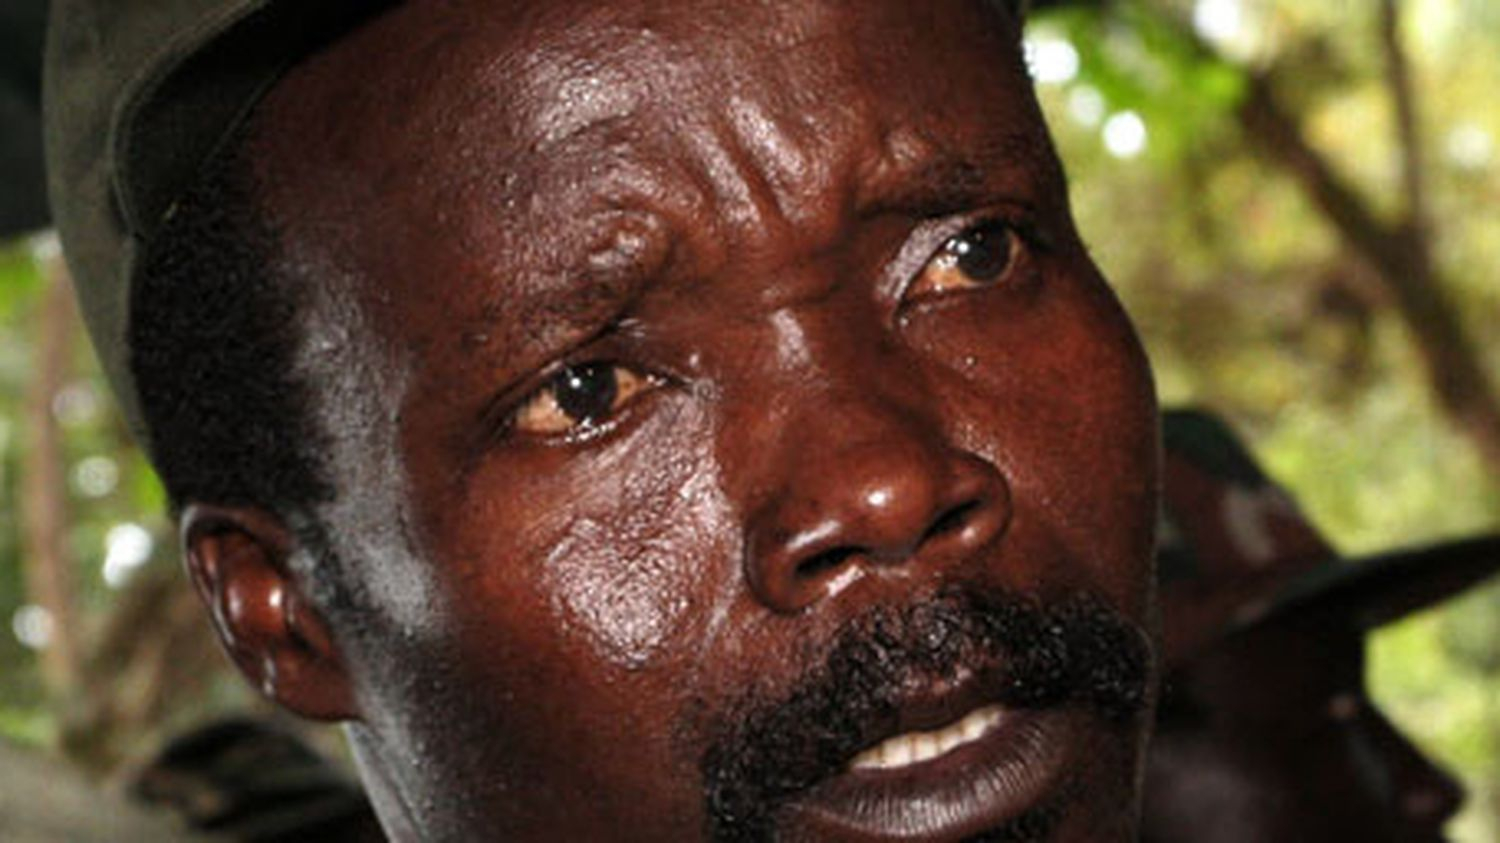 Centrafrique/LRA : les Etats-Unis mettent à prix la tête de Joseph Kony contre 5 millions de dollars